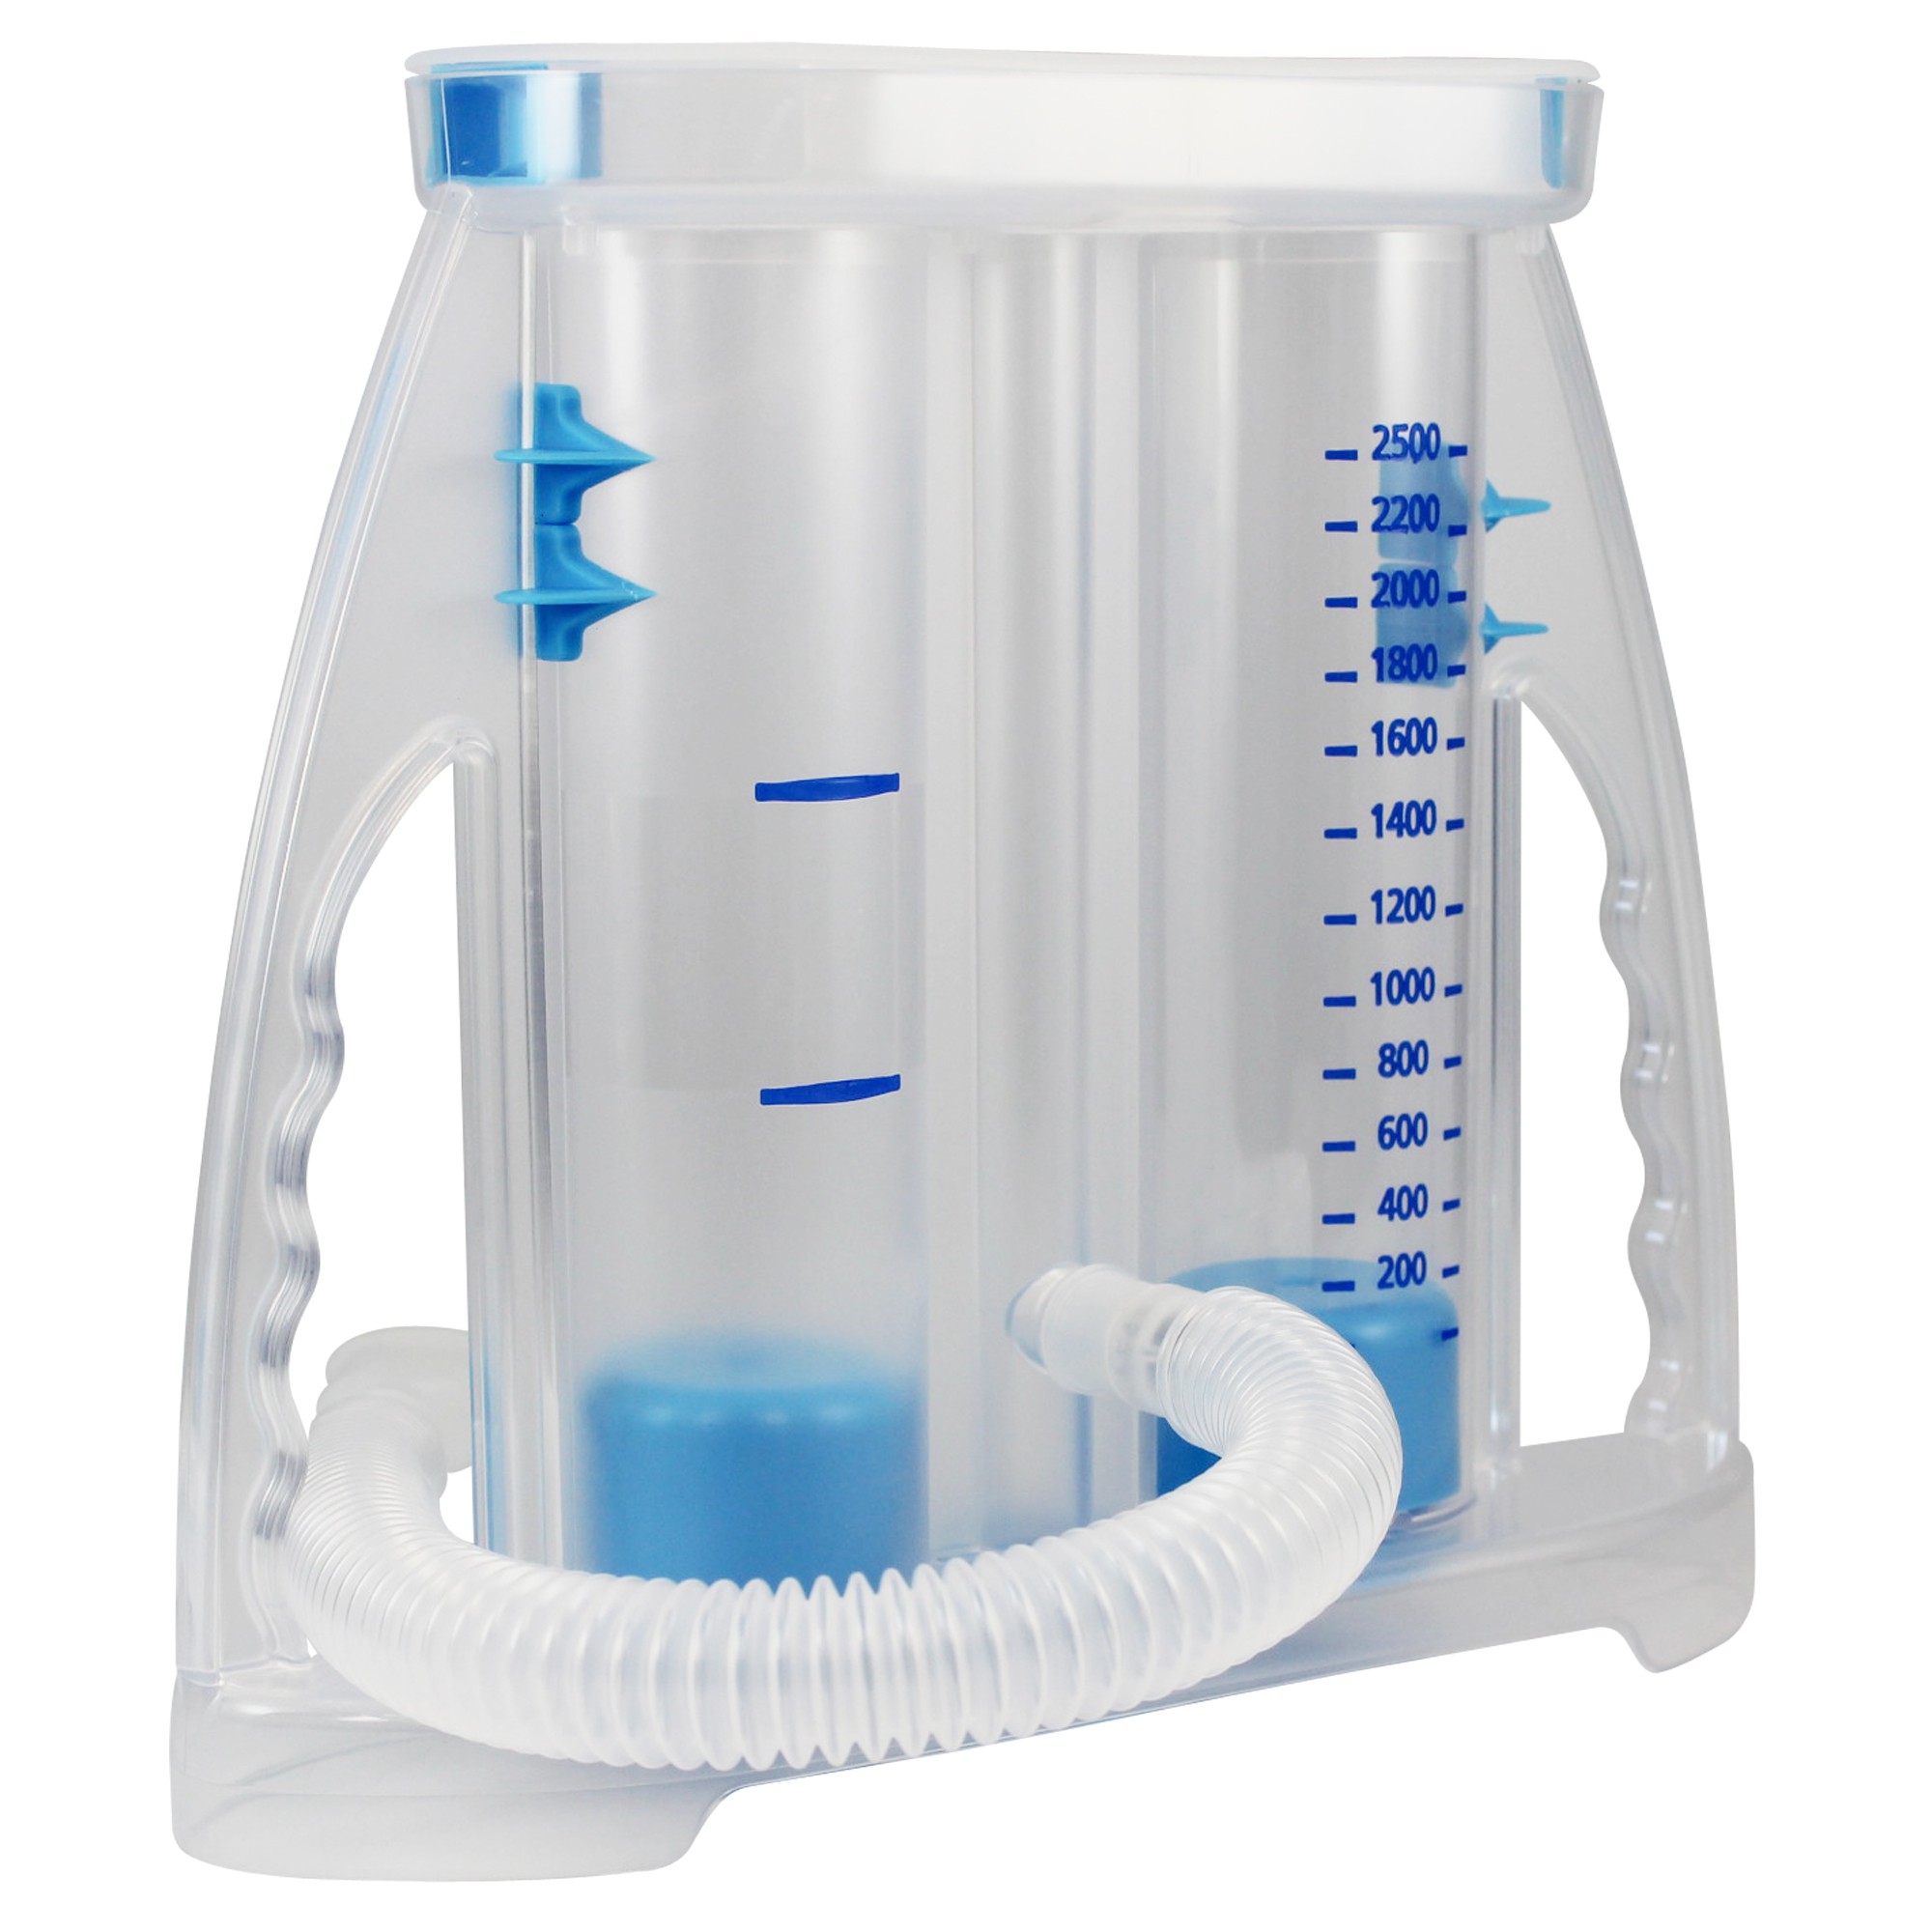 Atemtrainer PULMOVOL Spirometrie in 2 Ausführungen